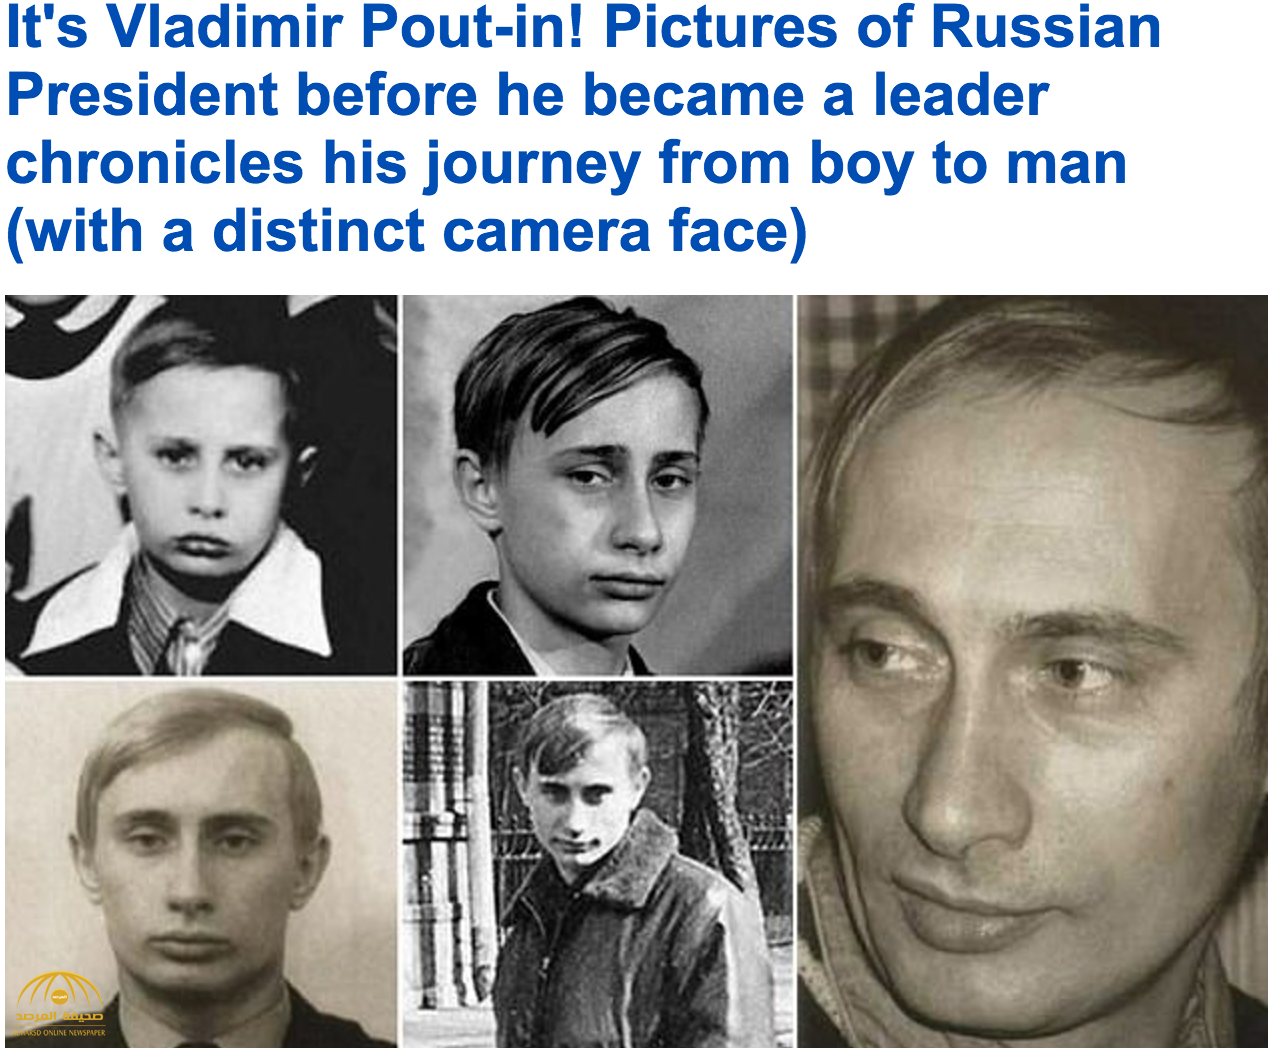 شاهد: صور نادرة للرئيس الروسي فلاديمير بوتين تظهر الجانب الخفي من حياته